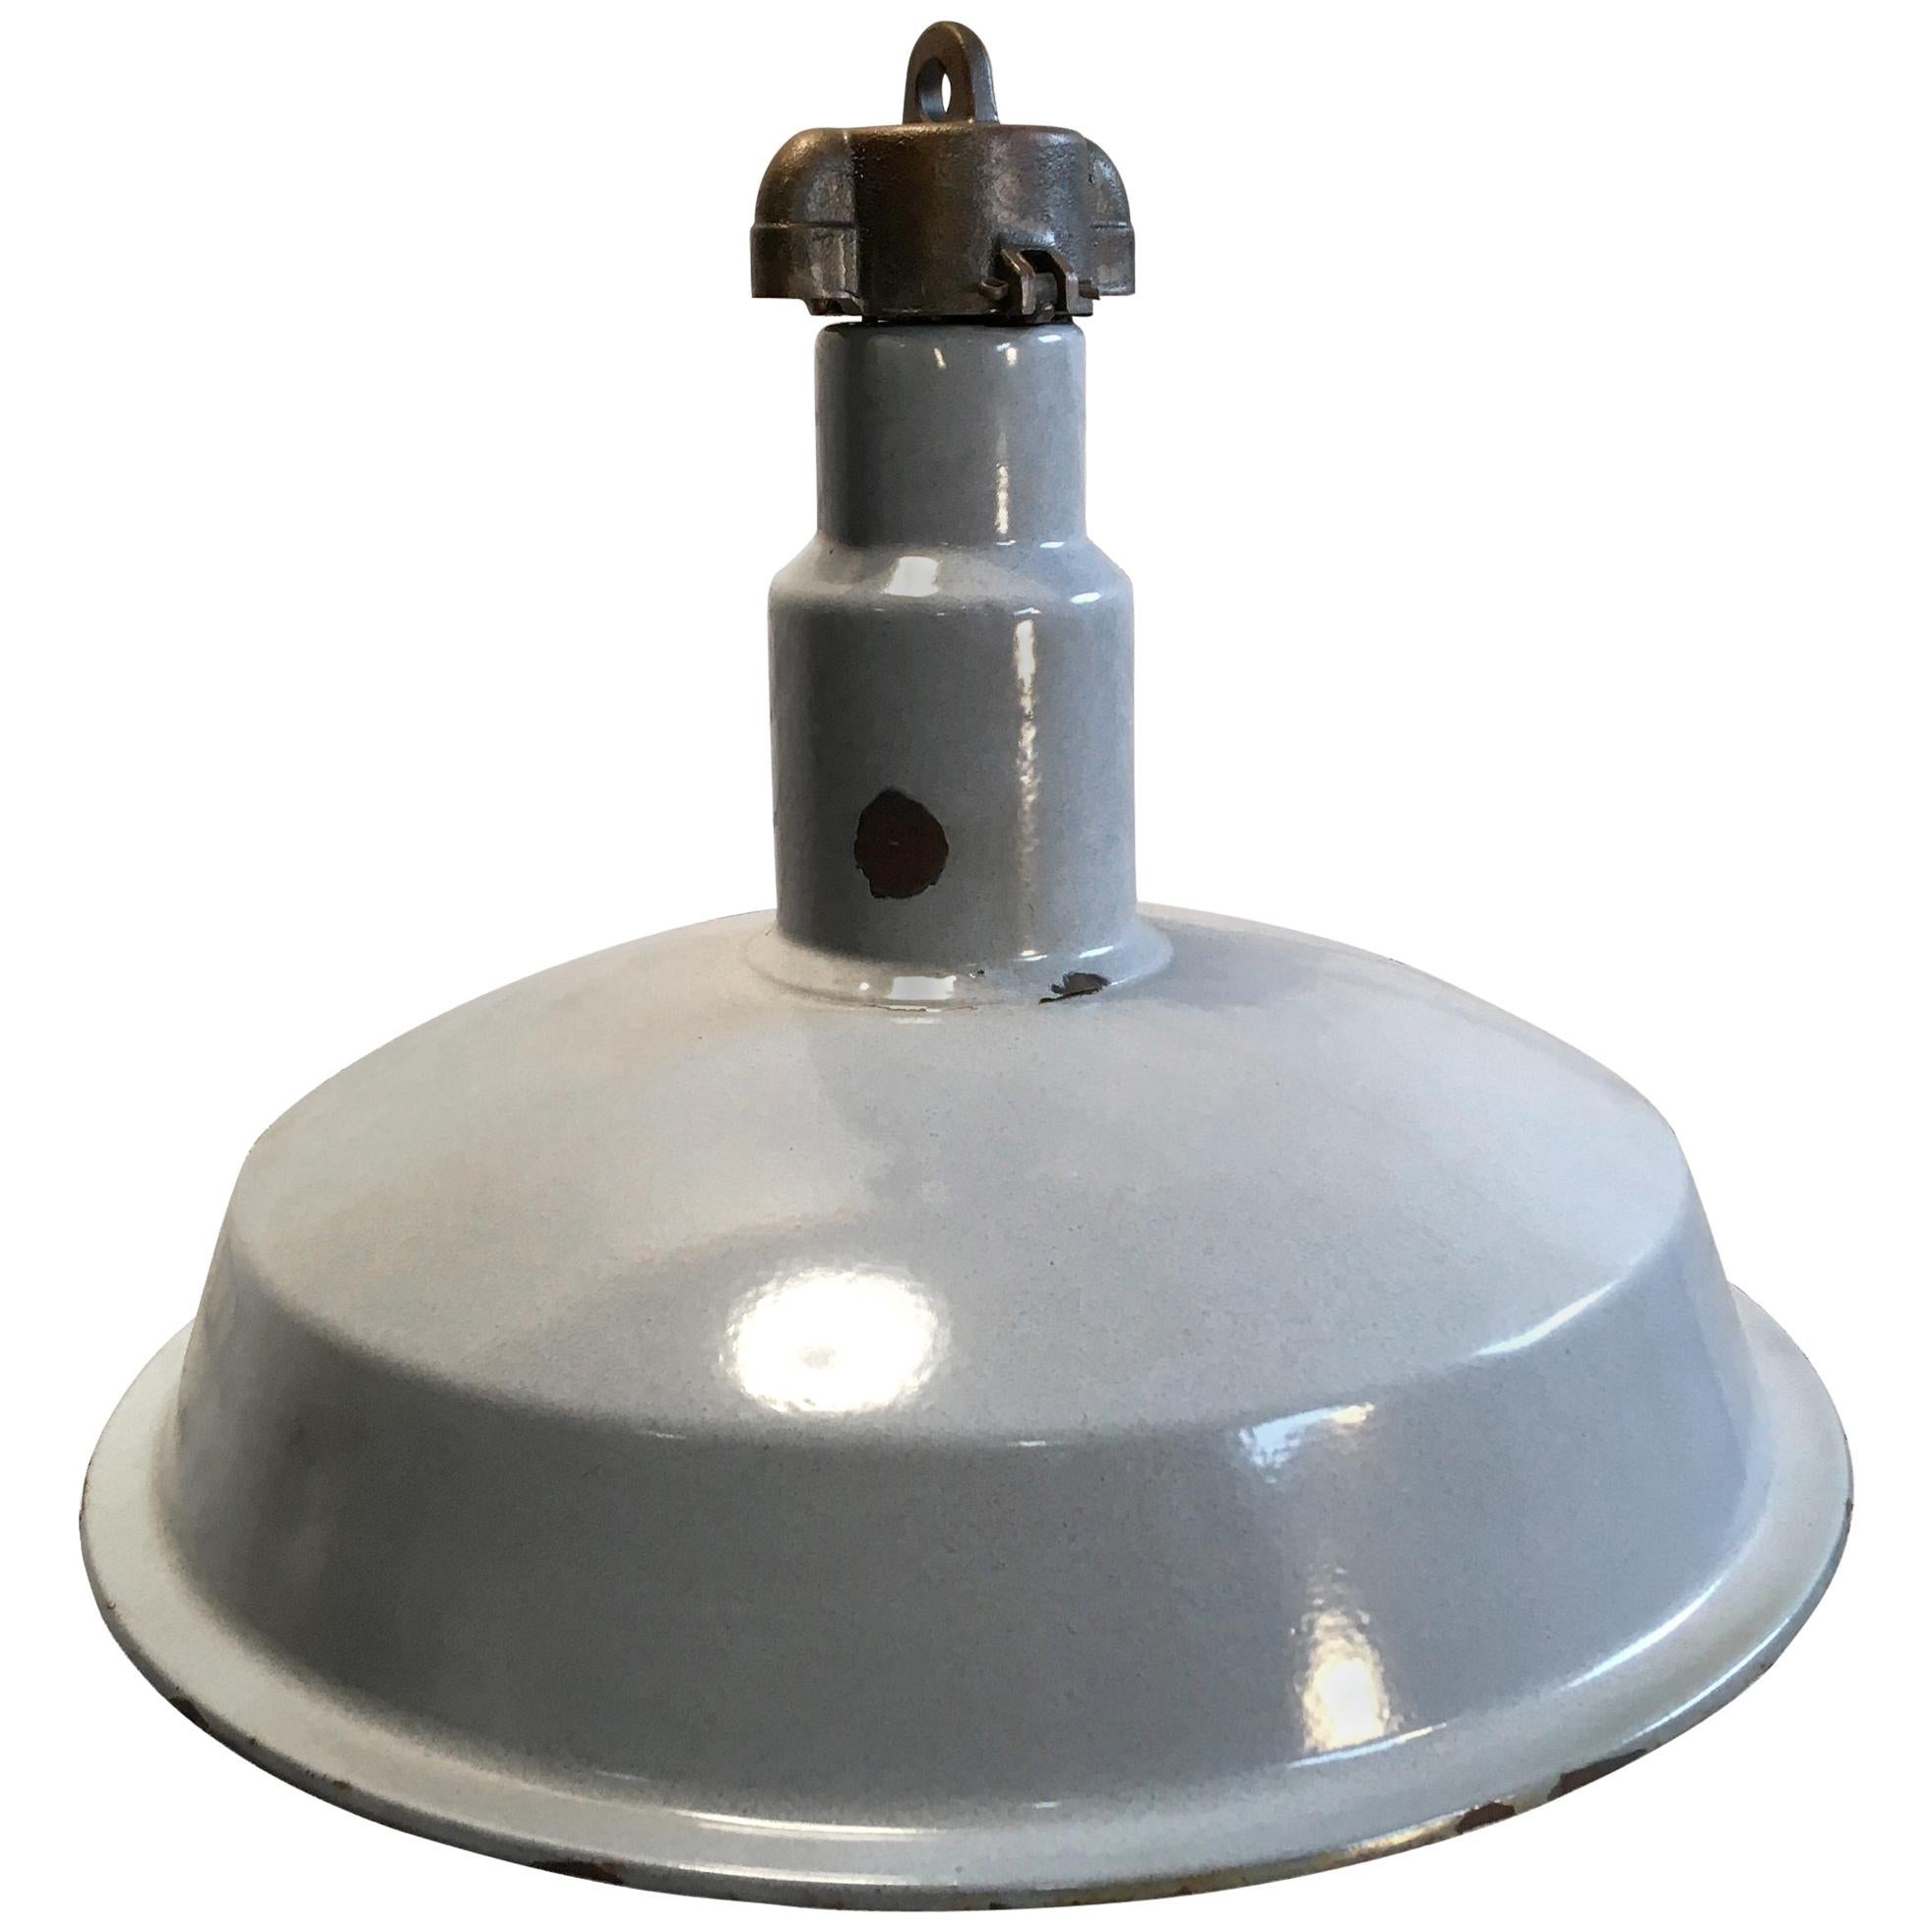 Midcentury Industrial Grey Enameled Factory Lamp